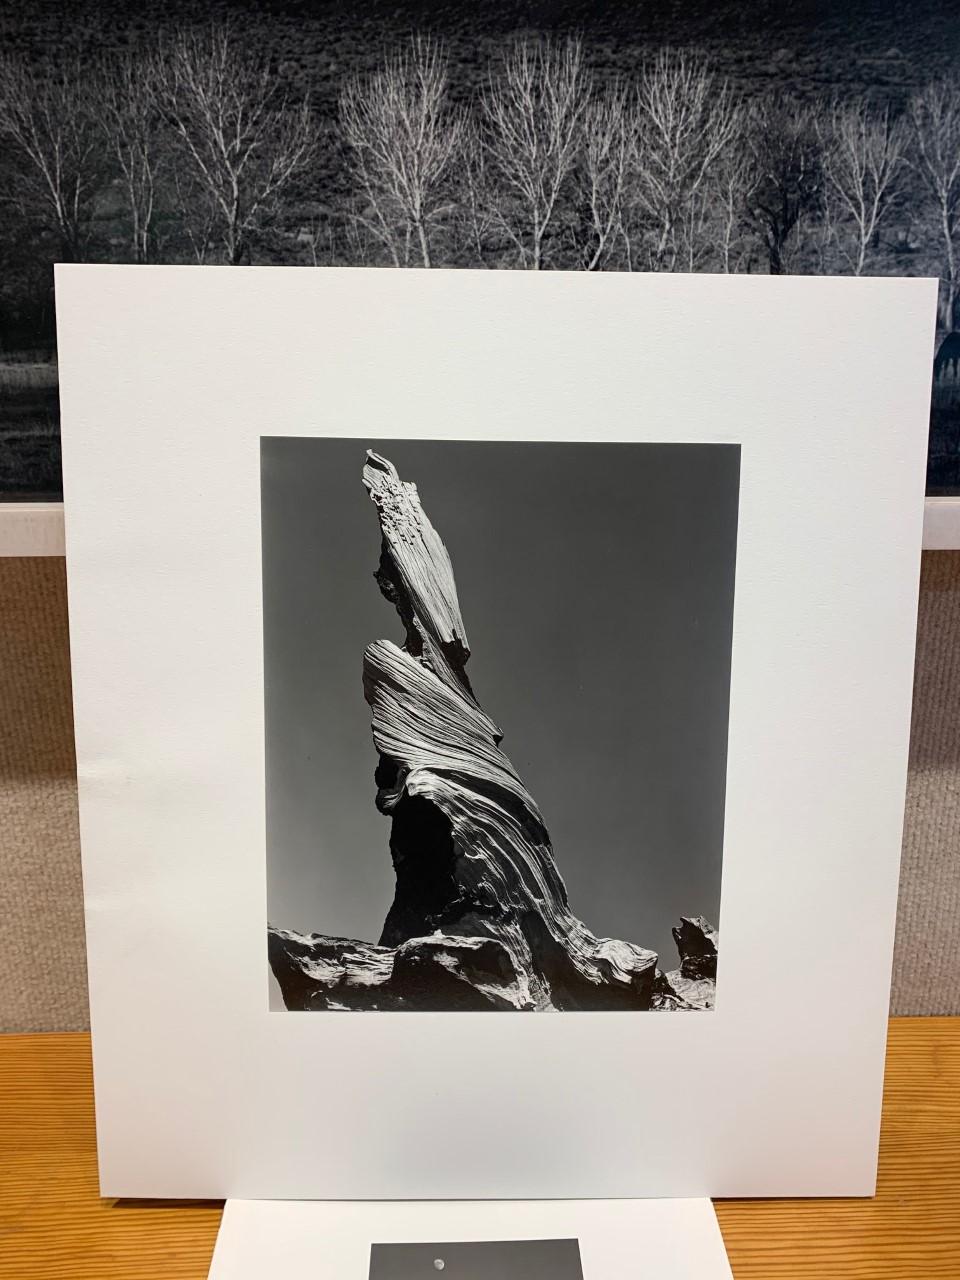 Driftwood Stump - Photograph by Edward Weston